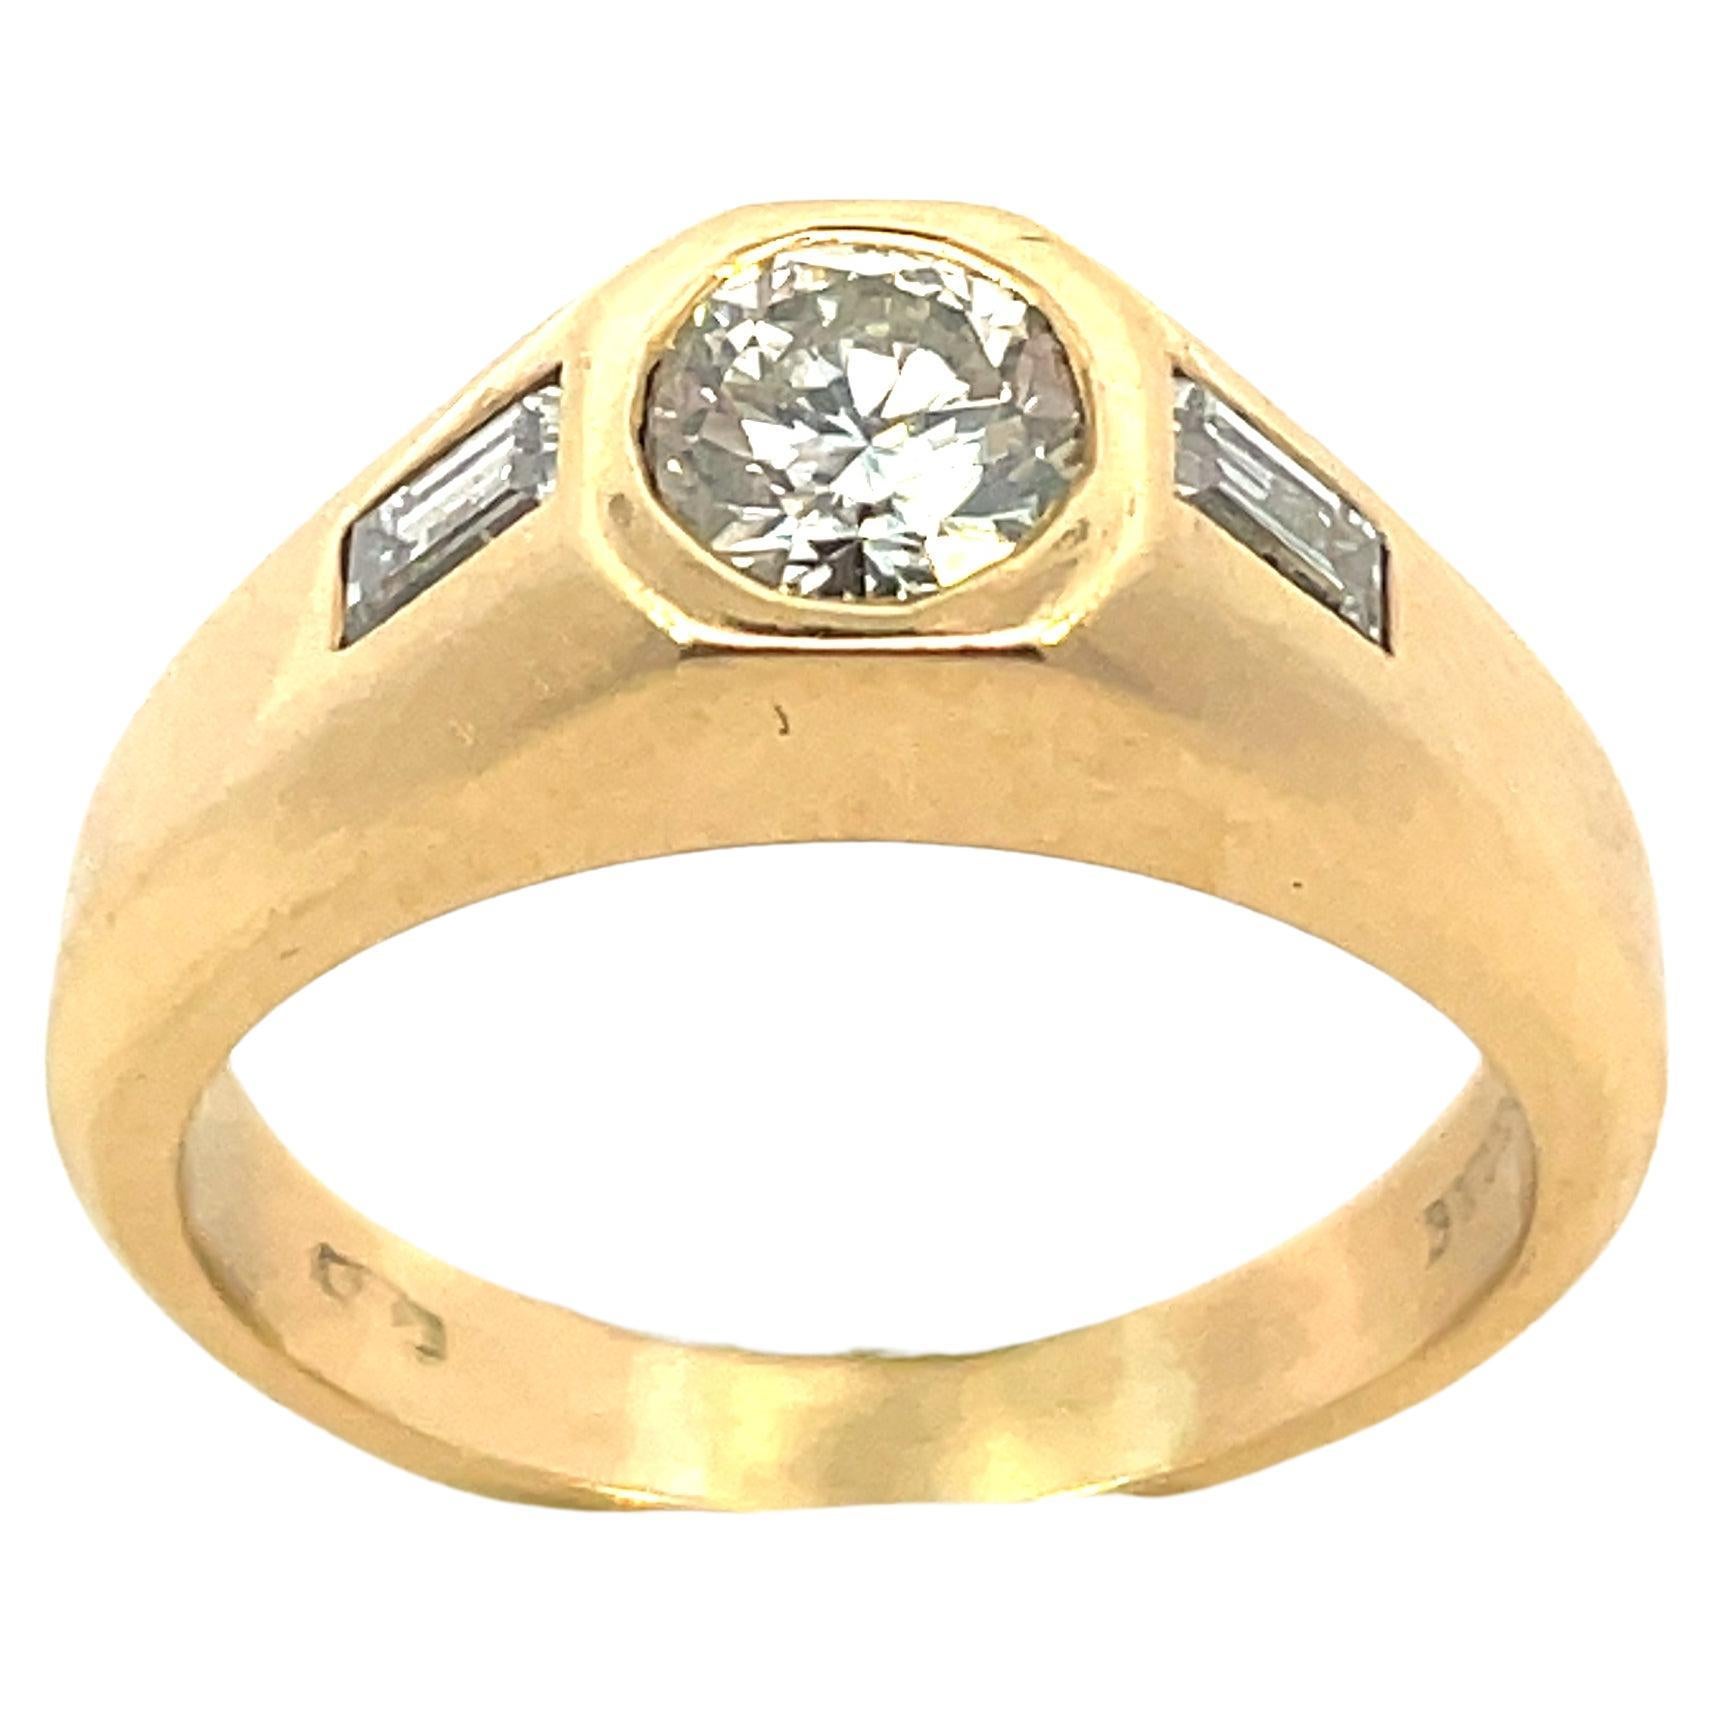 Très jolie bague en diamant vintage Bulgari des années 1970, la pierre centrale étant un diamant rond de taille brillant pesant environ 0,70 carats et agrémentée de 2 diamants de taille baguette pesant environ 0,18 cts.
Le diamant central est de